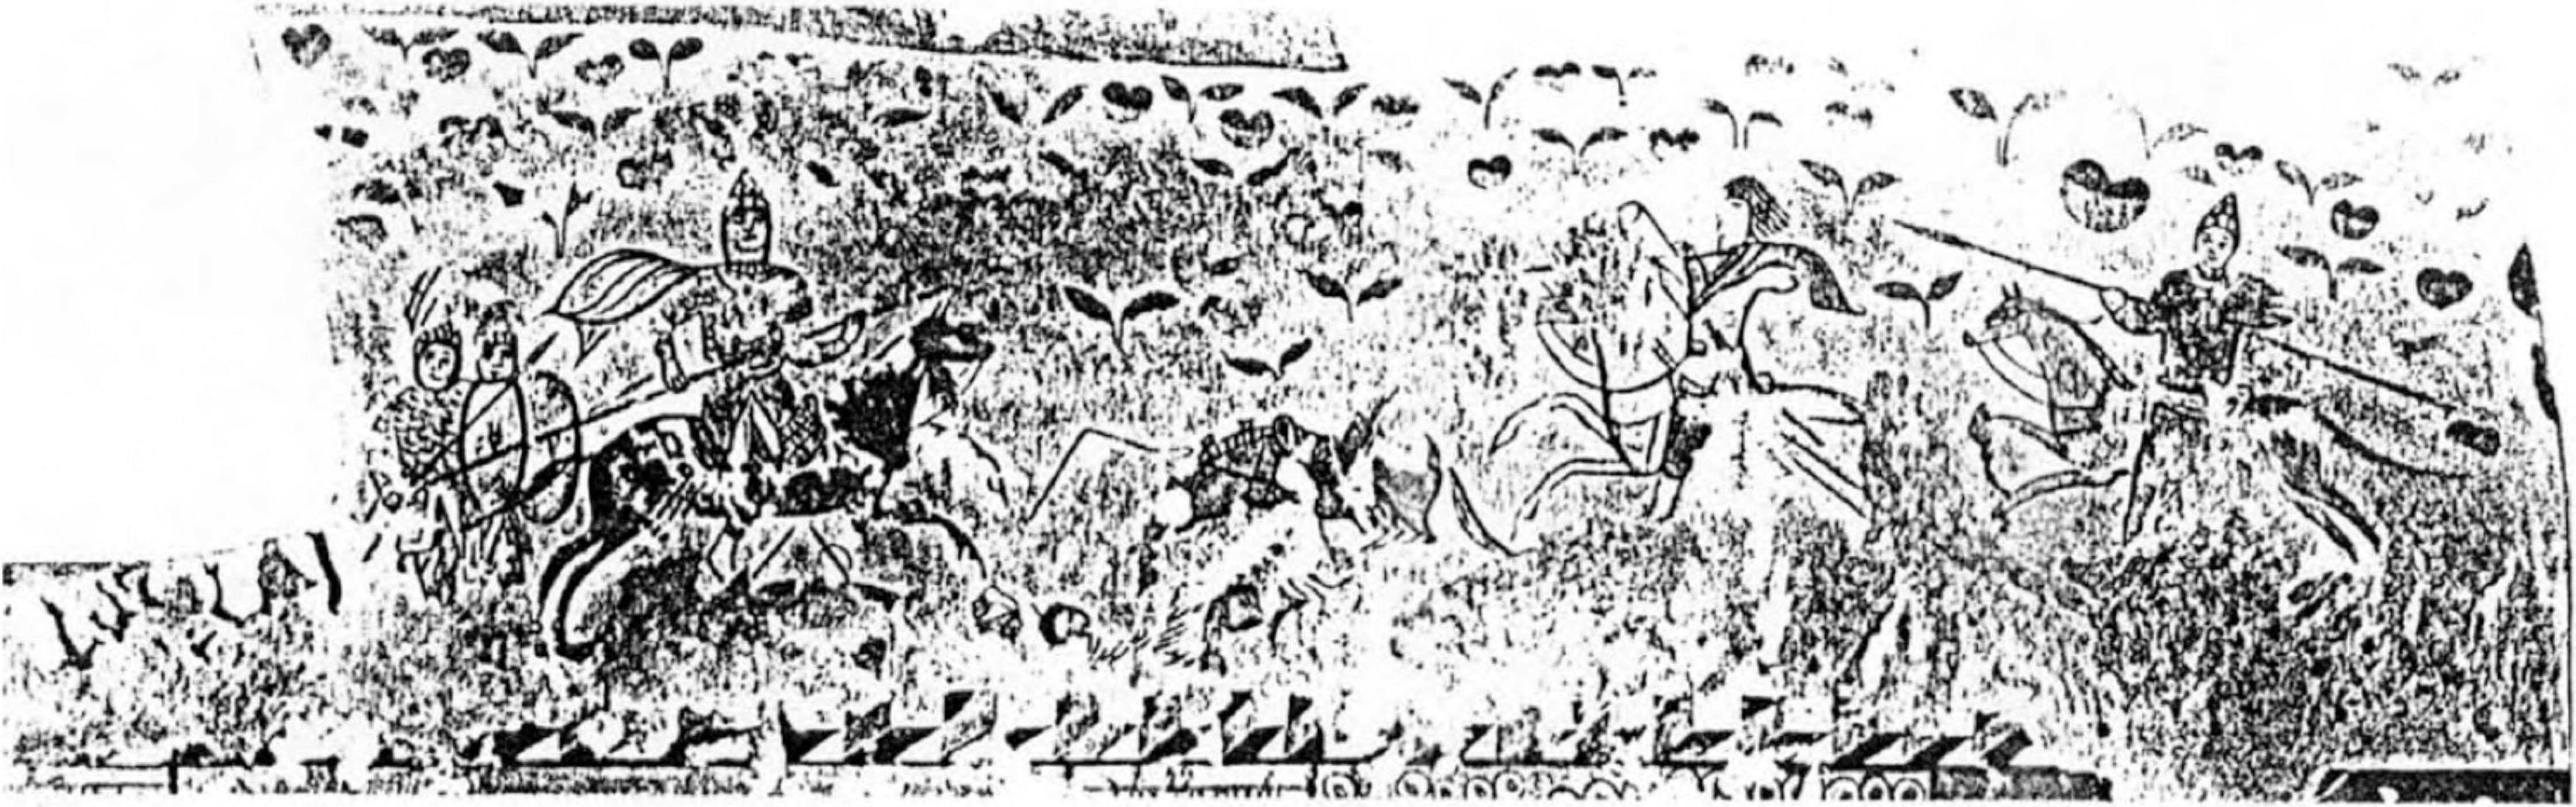 Рис. 108. Сцена конного боя в росписи Стасовского склепа 1872 г.